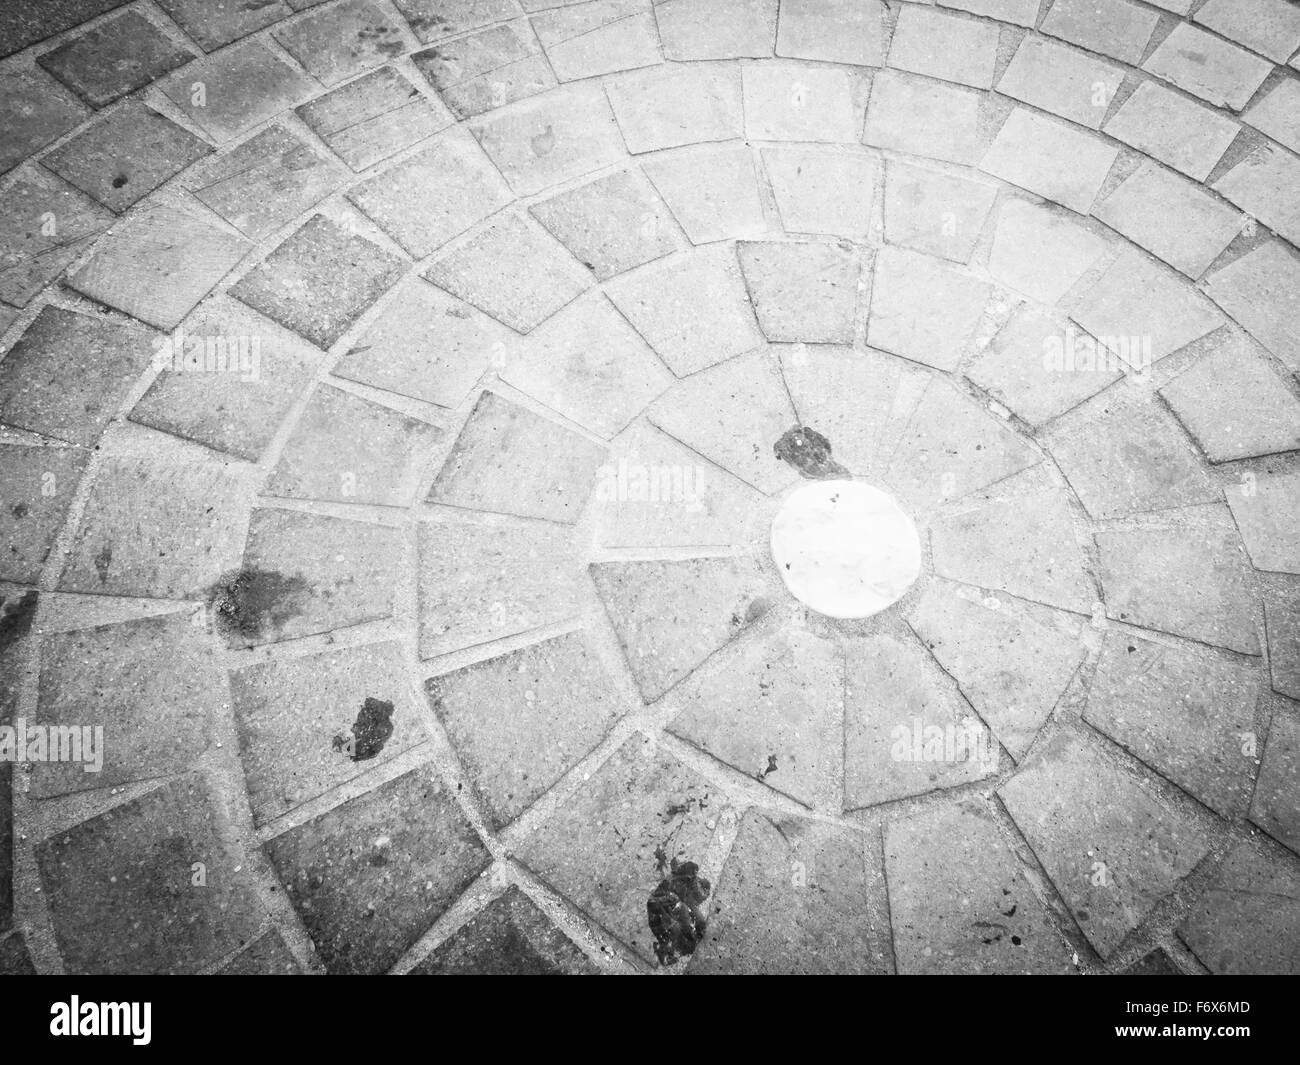 Ciottoli in cerchio. Immagine della pavimentazione urbana sporco Foto Stock